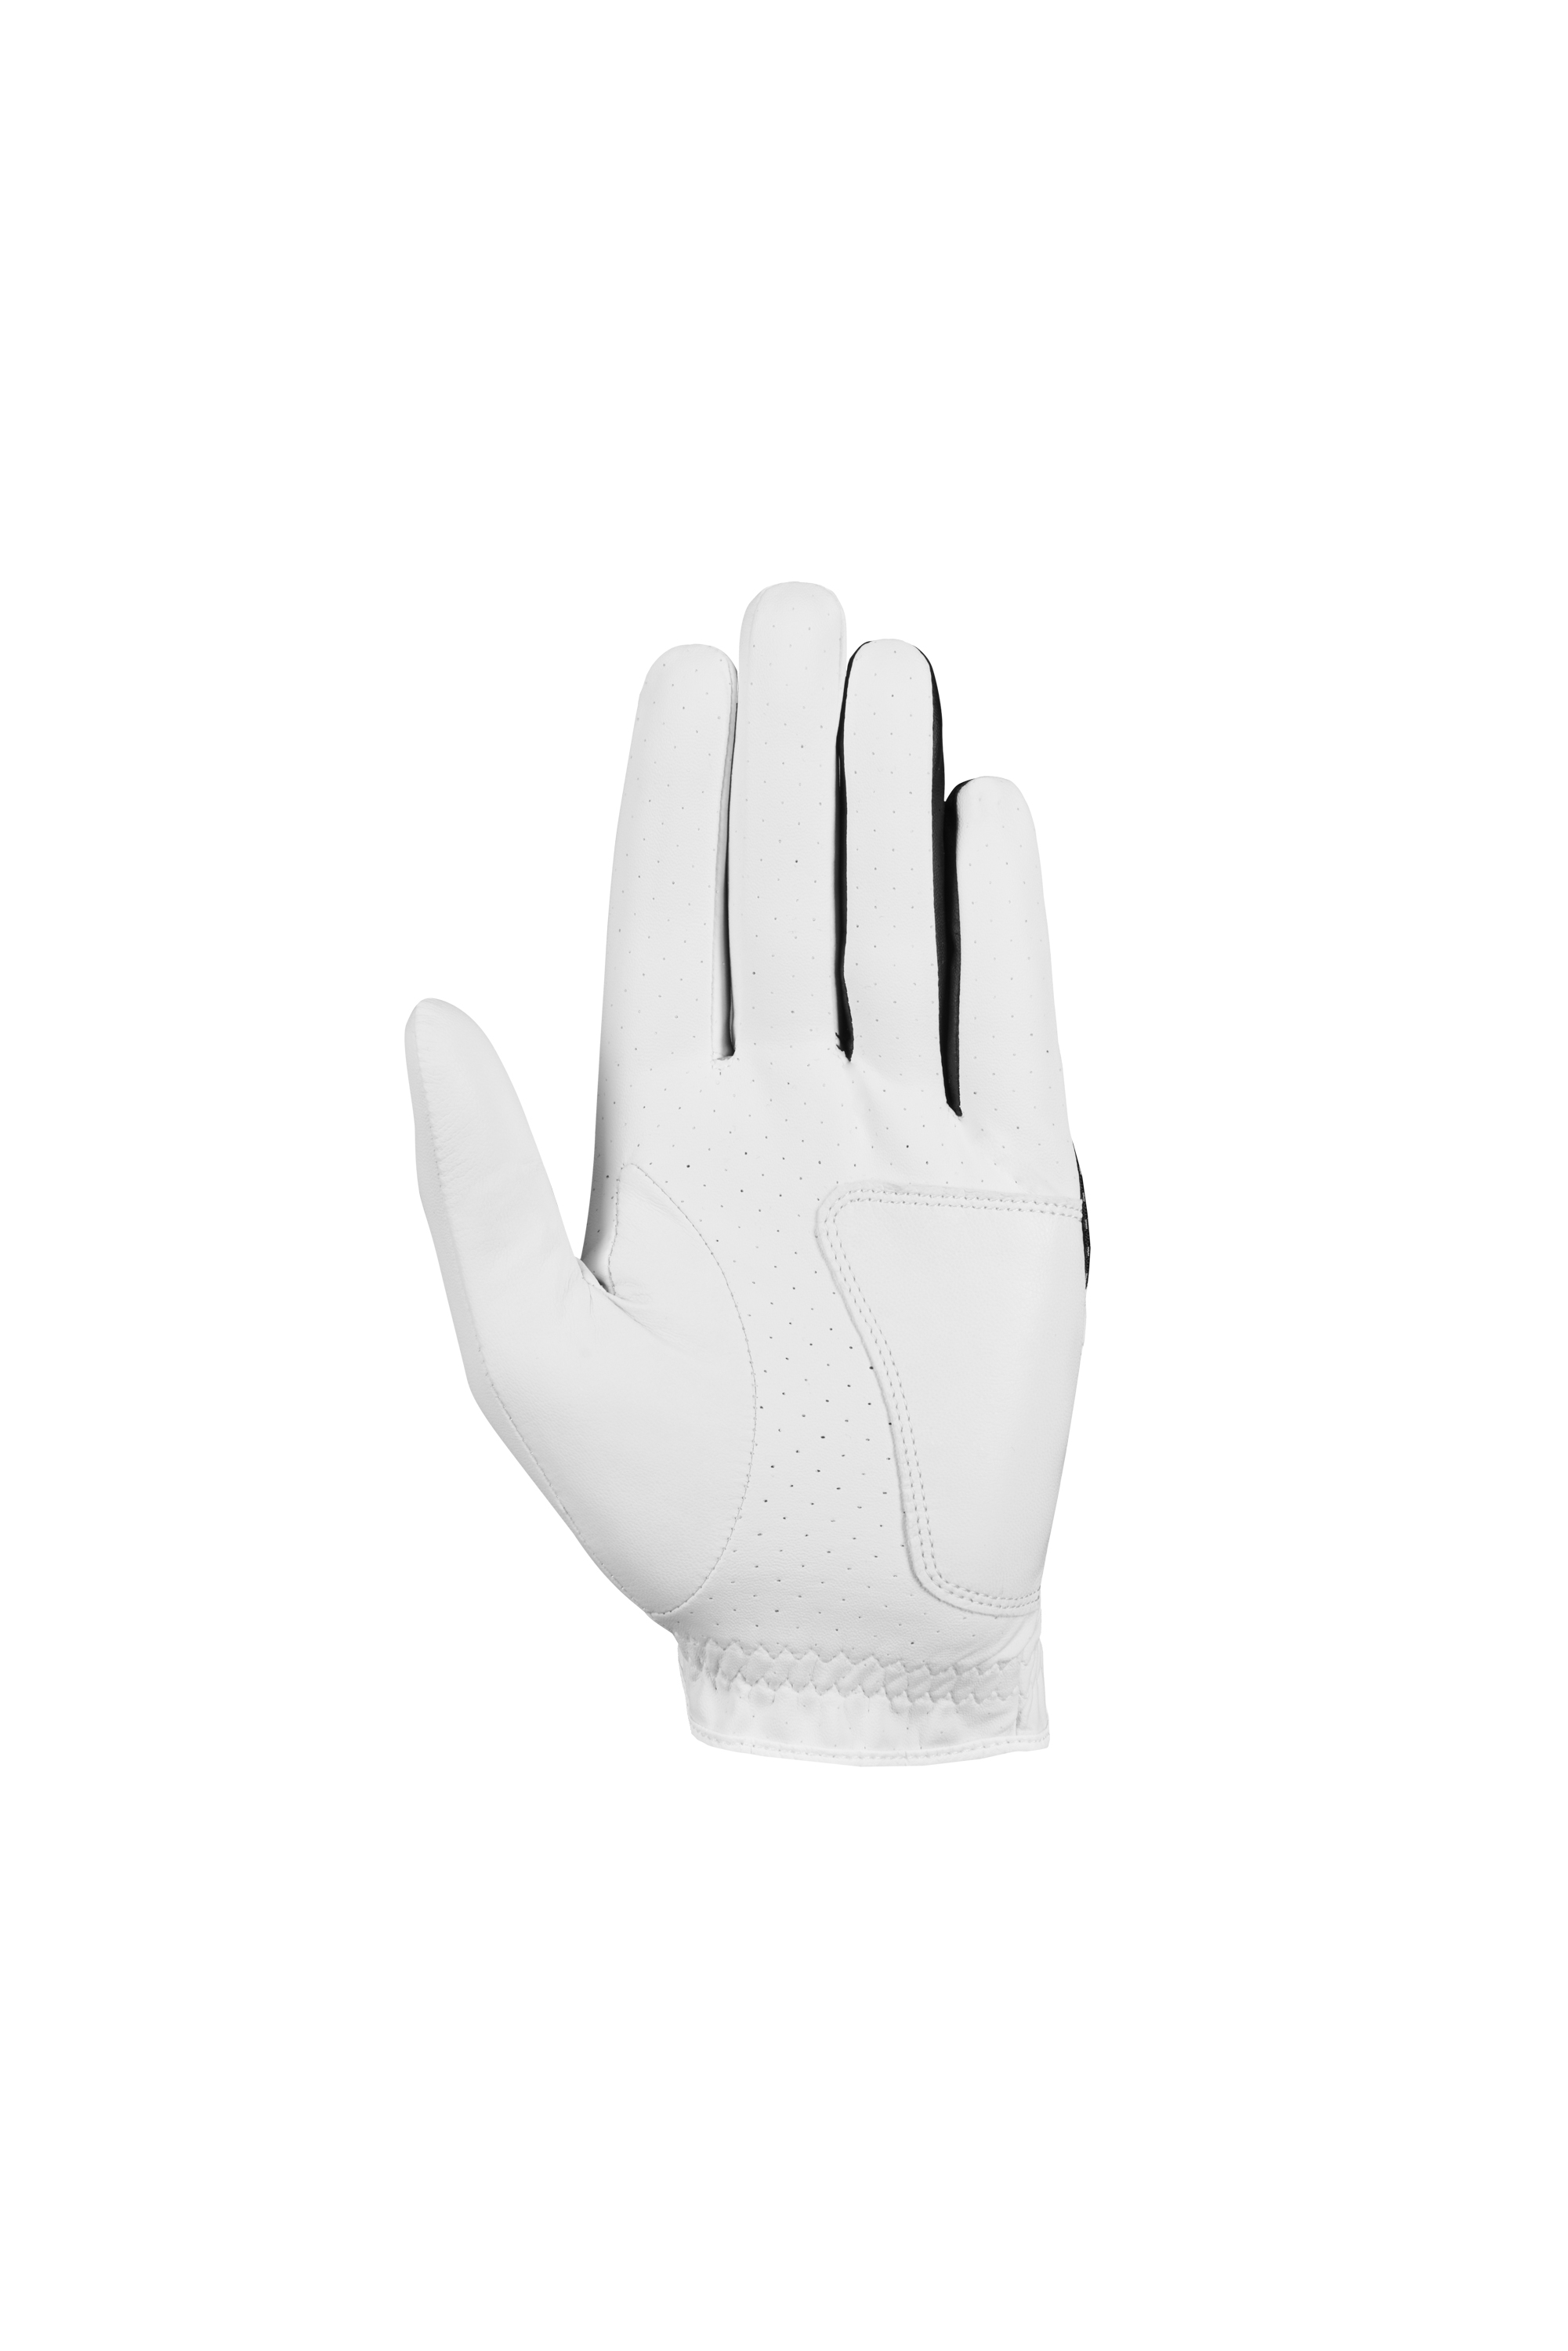 CALLAWAY Weather Spann pánská rukavice pro leváky 2023, velikost M, M/L, L - zvìtšit obrázek